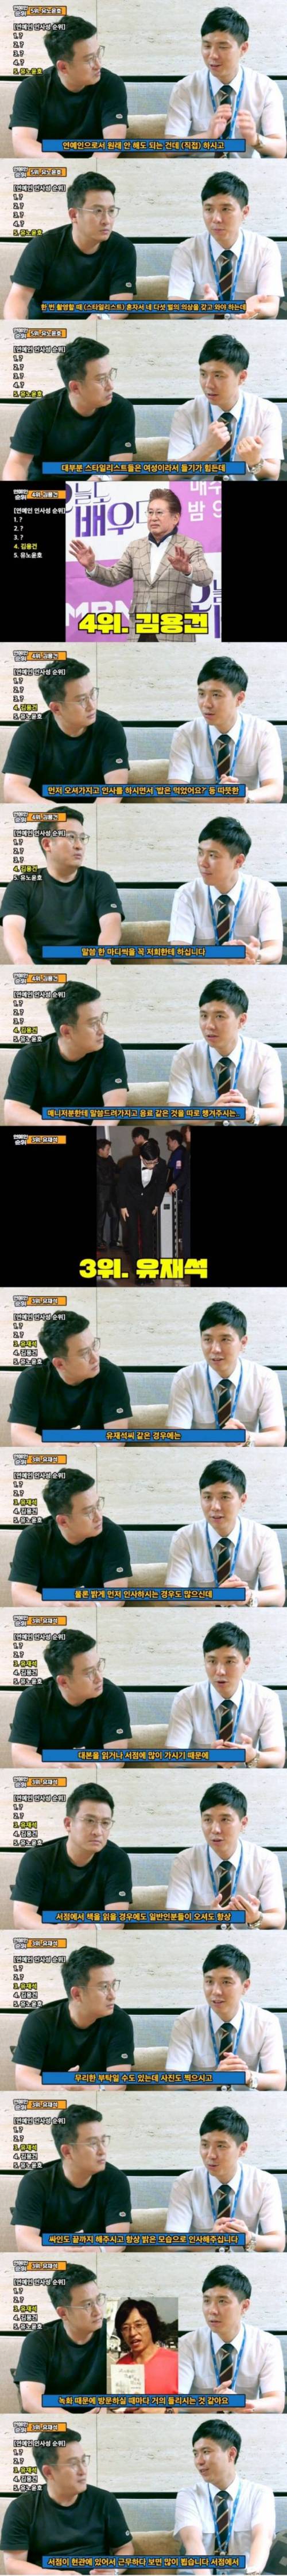 [스압] MBC 안전관리팀에서 뽑은 연예인 인사성 순위.jpg